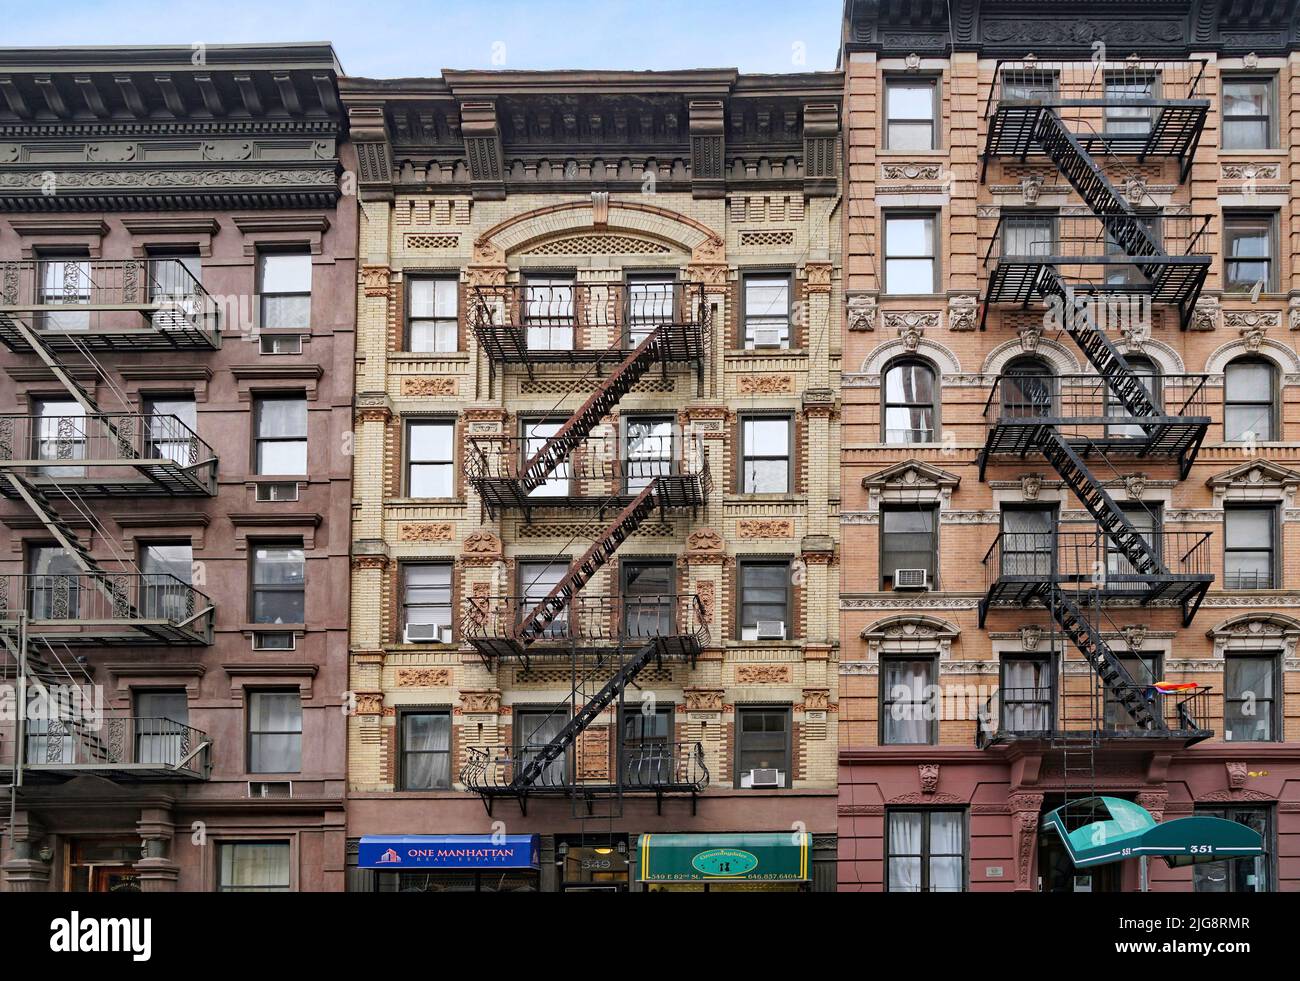 Fachada del antiguo edificio de apartamentos de Manhattan con escaleras externas para escaparse de incendios y tiendas en la planta baja Foto de stock